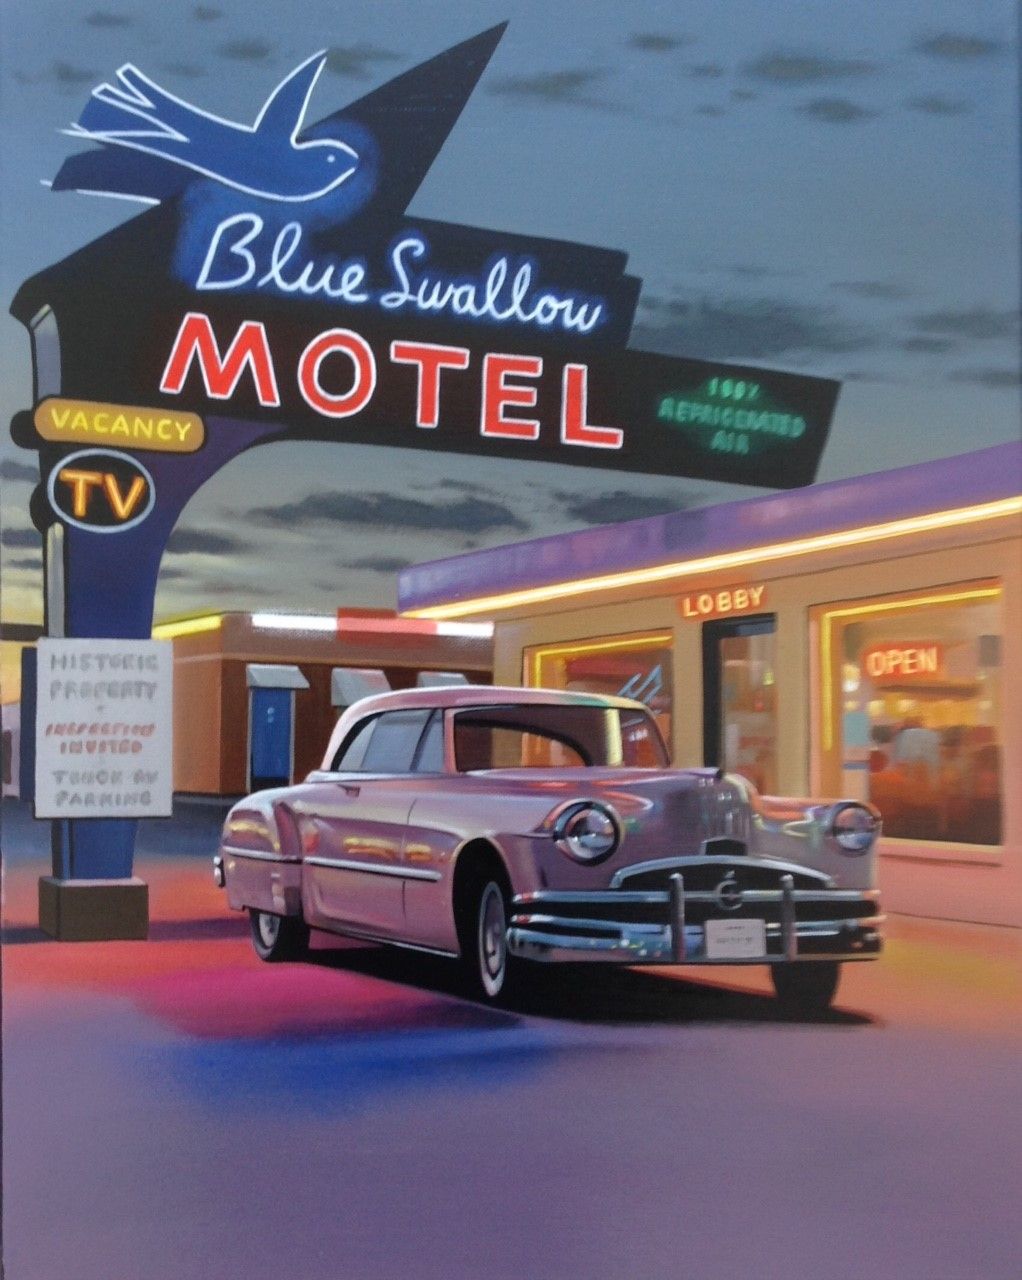 Neil Dawson "Blue Swallow Motel"